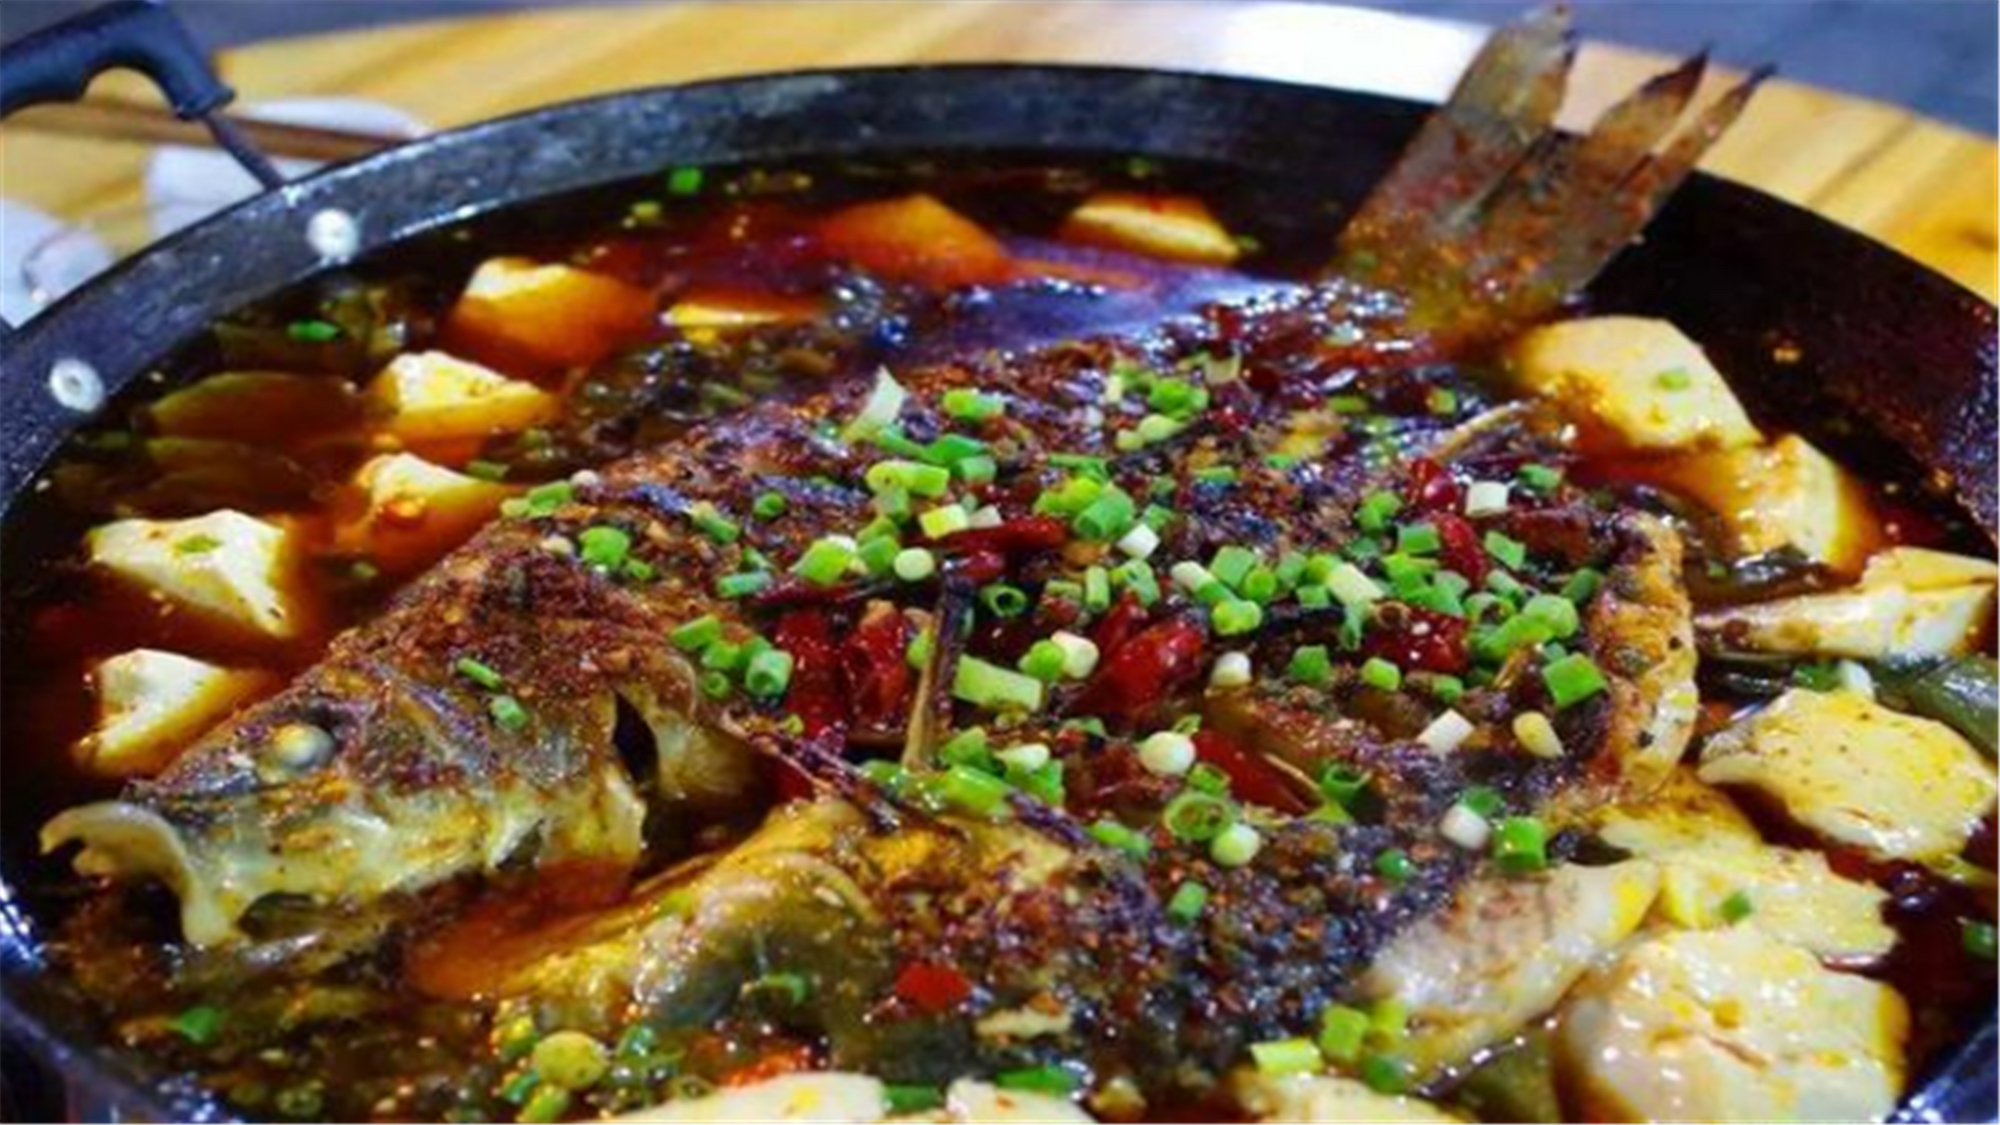 盘点四川泸州的十大特色美食,是记忆深处家乡美食,十分经典!